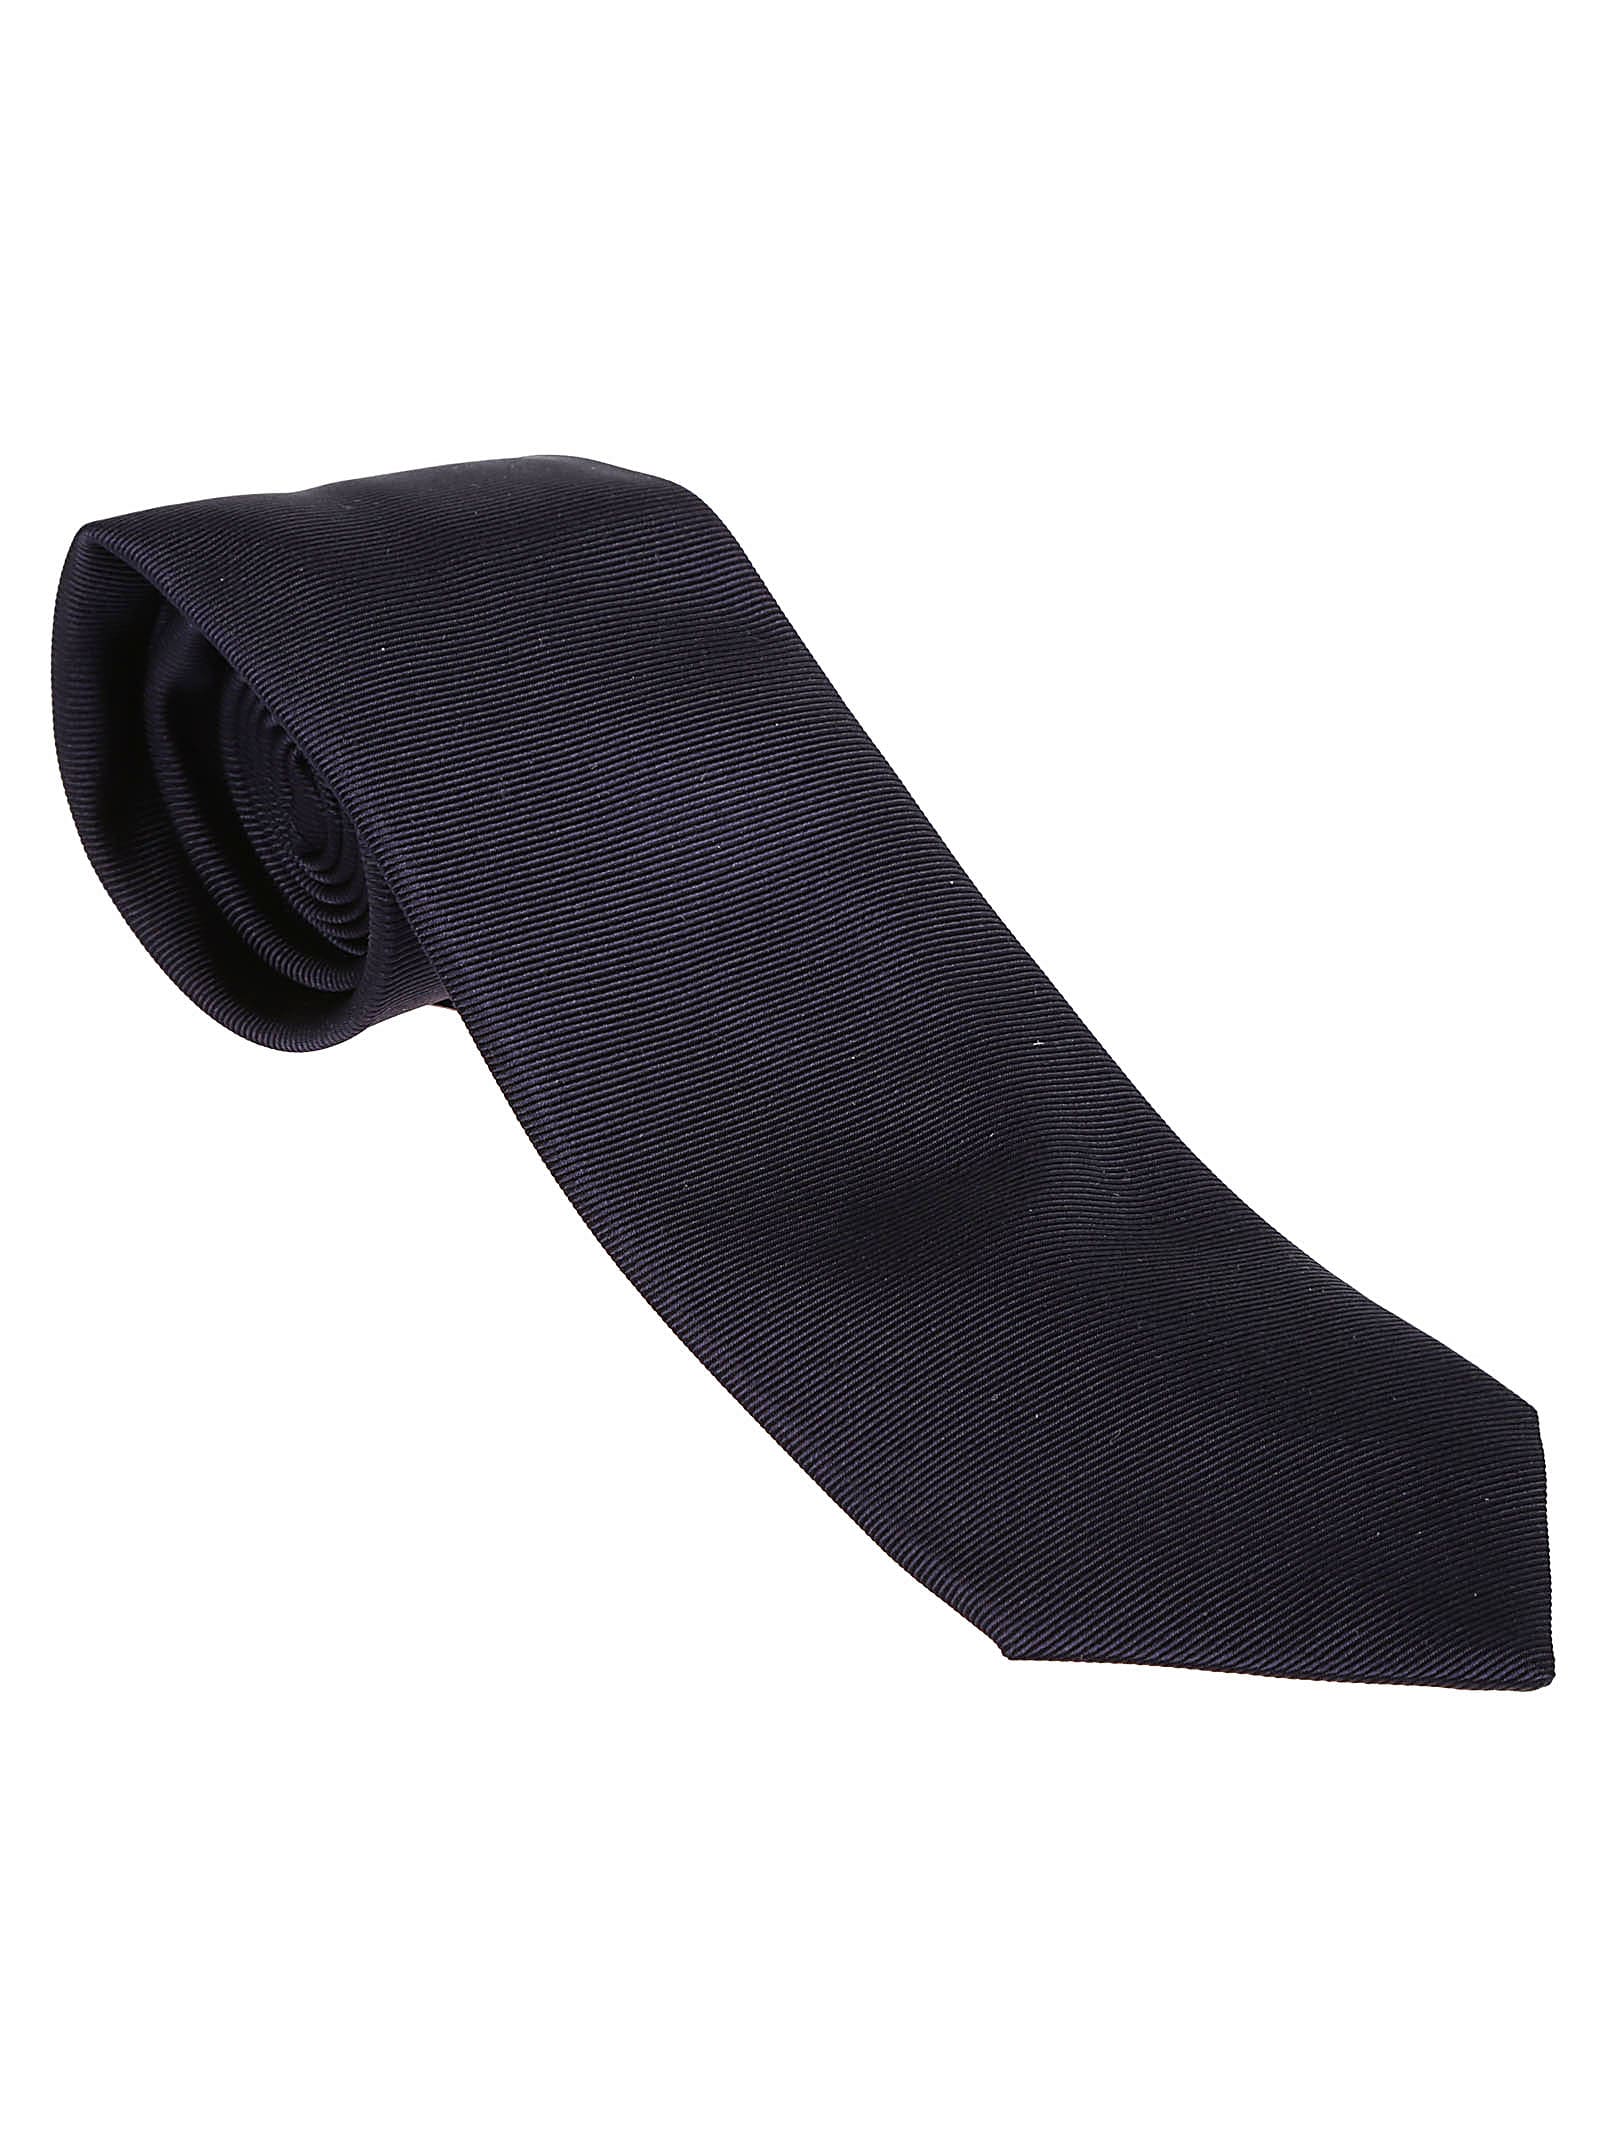 Etro Placed Tie In Blu Navy